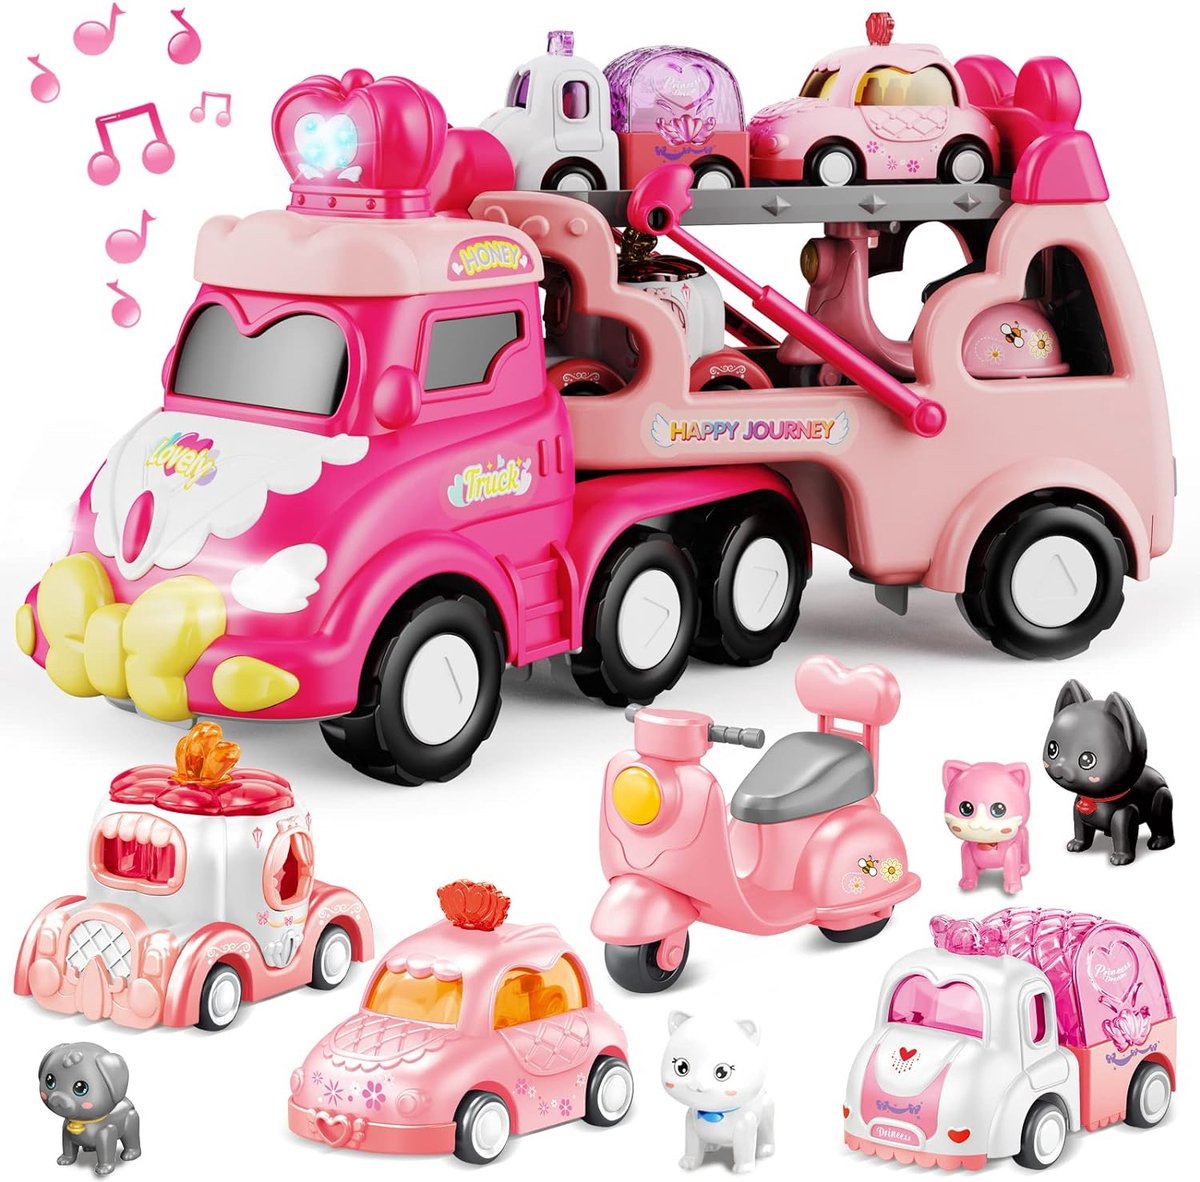 Speelgoedauto voor meisjes vanaf 2 jaar, 9-in-1, voor kleine kinderen, bestelwagen, vrachtwagen, speelgoed met licht en muziek, Kerstmis, verjaardag, voor meisjes en jongens